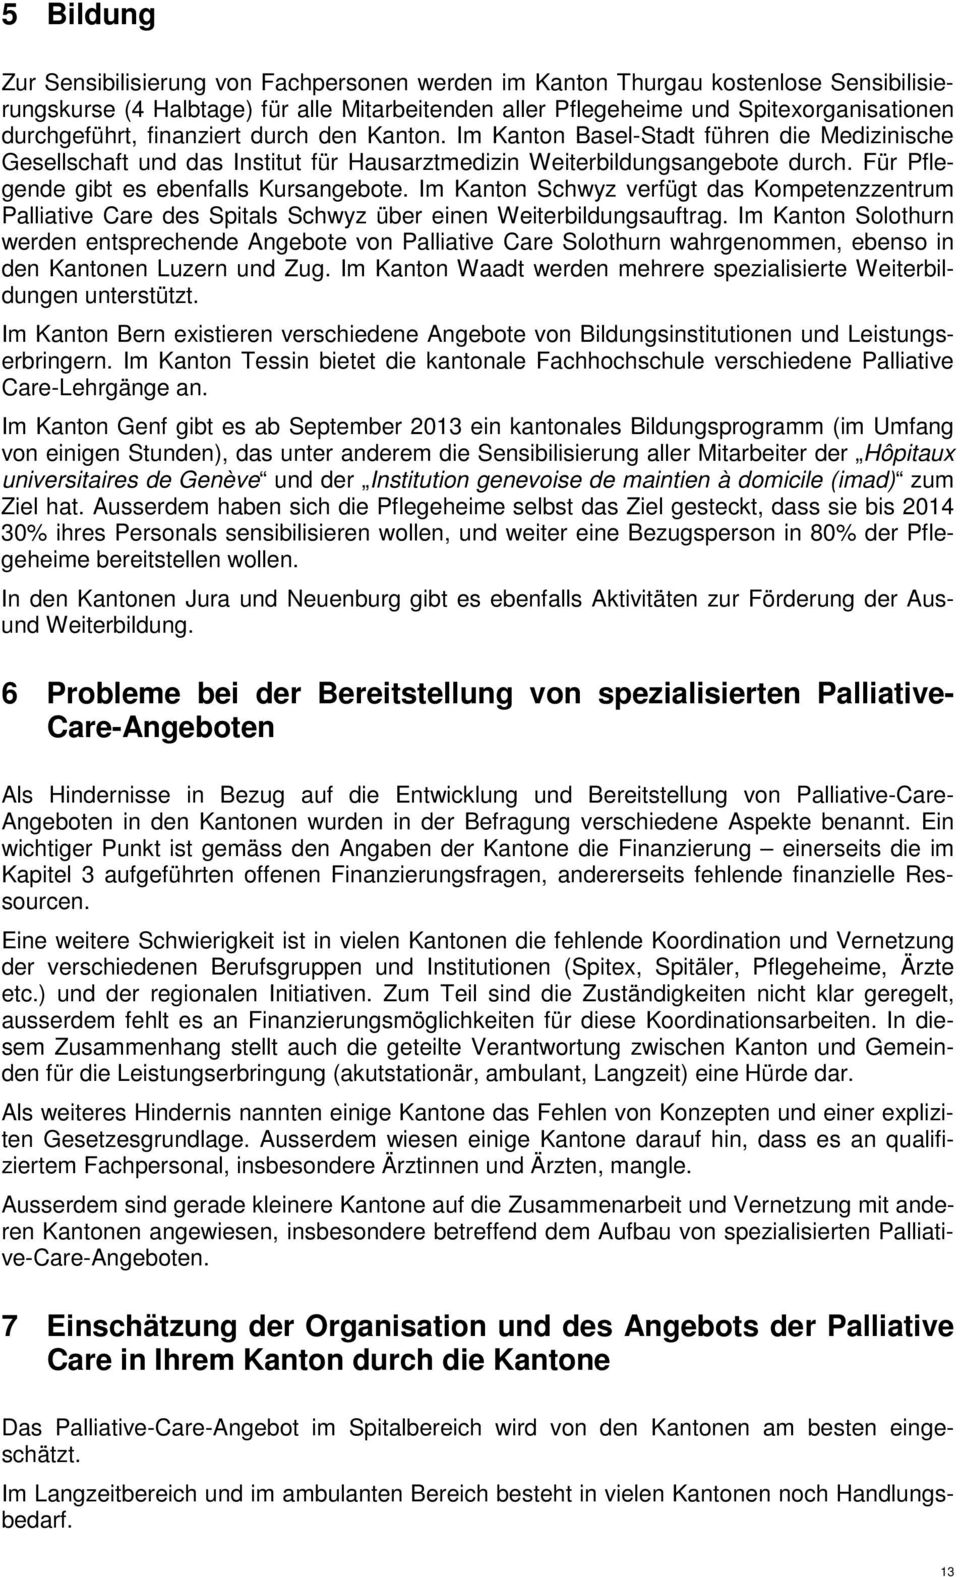 Für Pflegende gibt es ebenfalls Kursangebote. Im Kanton Schwyz verfügt das Kompetenzzentrum Palliative Care des Spitals Schwyz über einen Weiterbildungsauftrag.